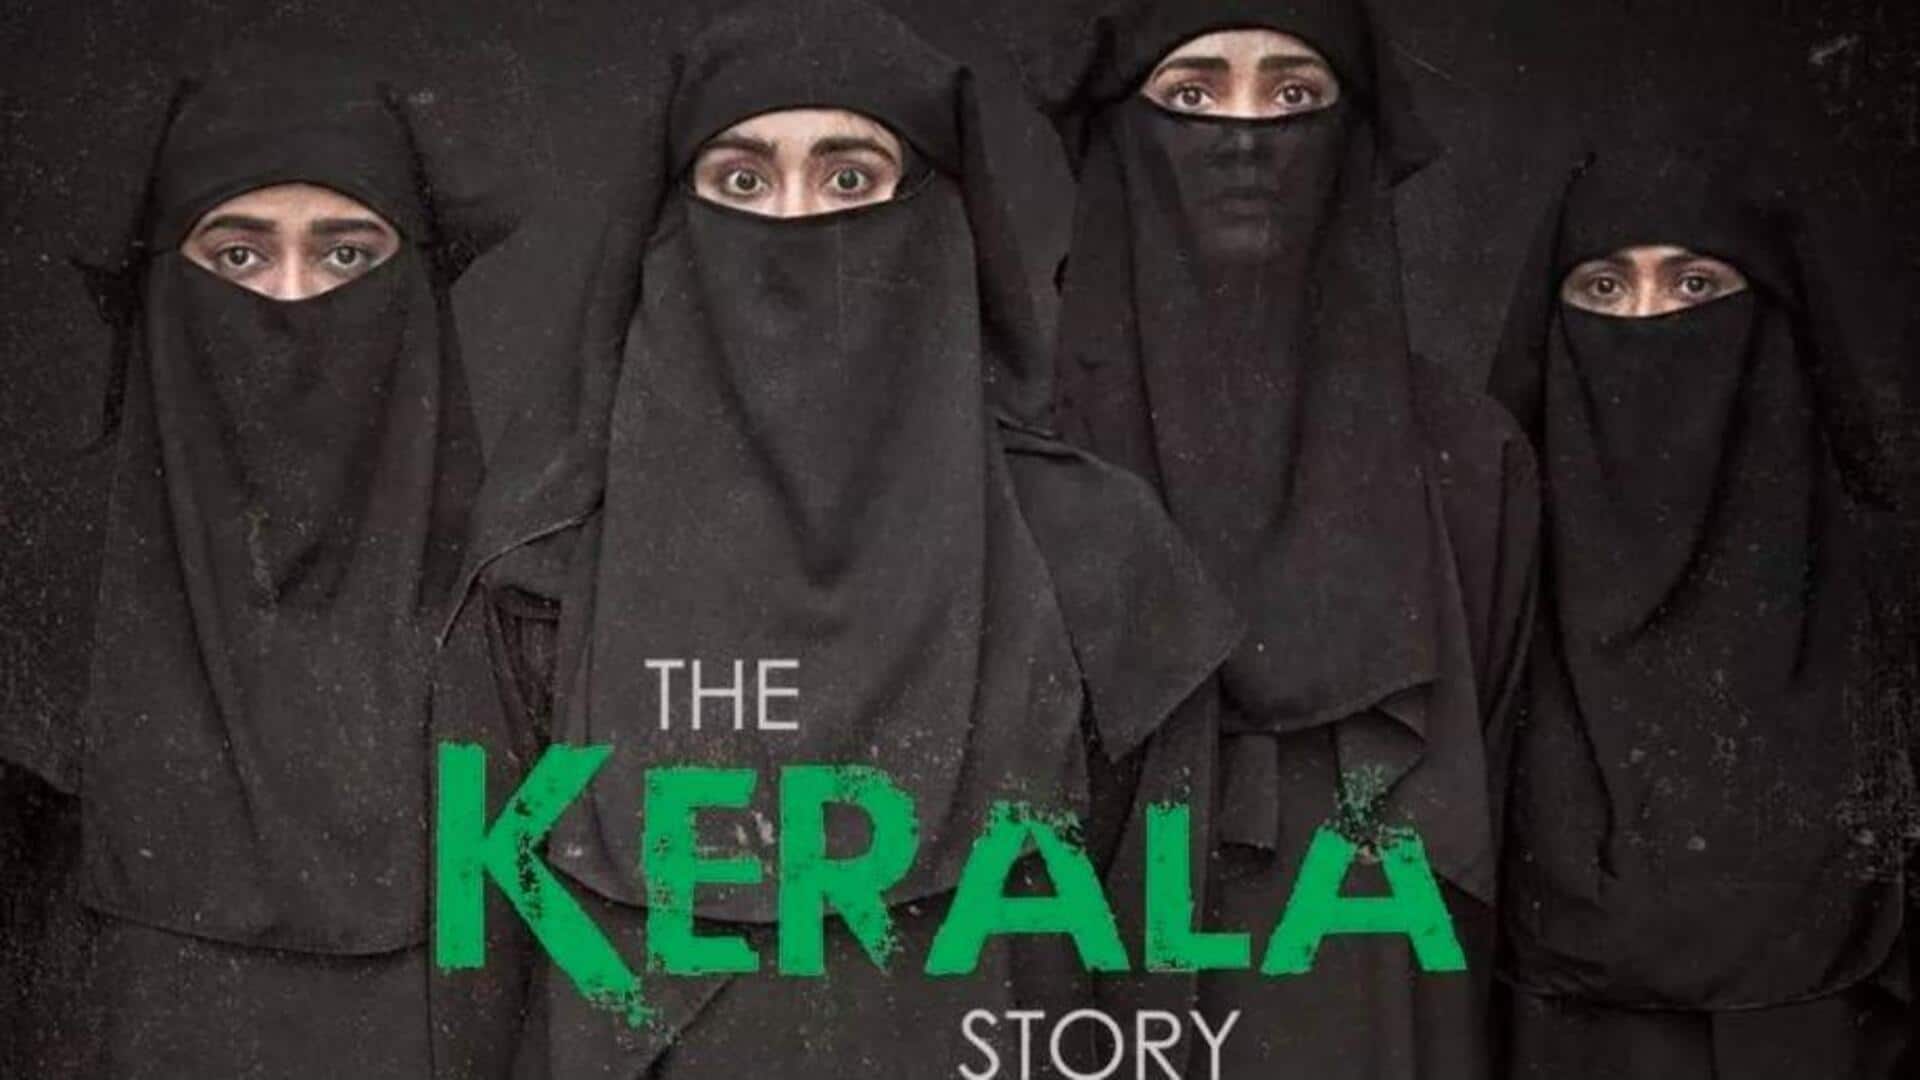 बॉक्स ऑफिस: अदा शर्मा की फिल्म 'द केरल स्टोरी' की कमाई 250 करोड़ रुपये की ओर